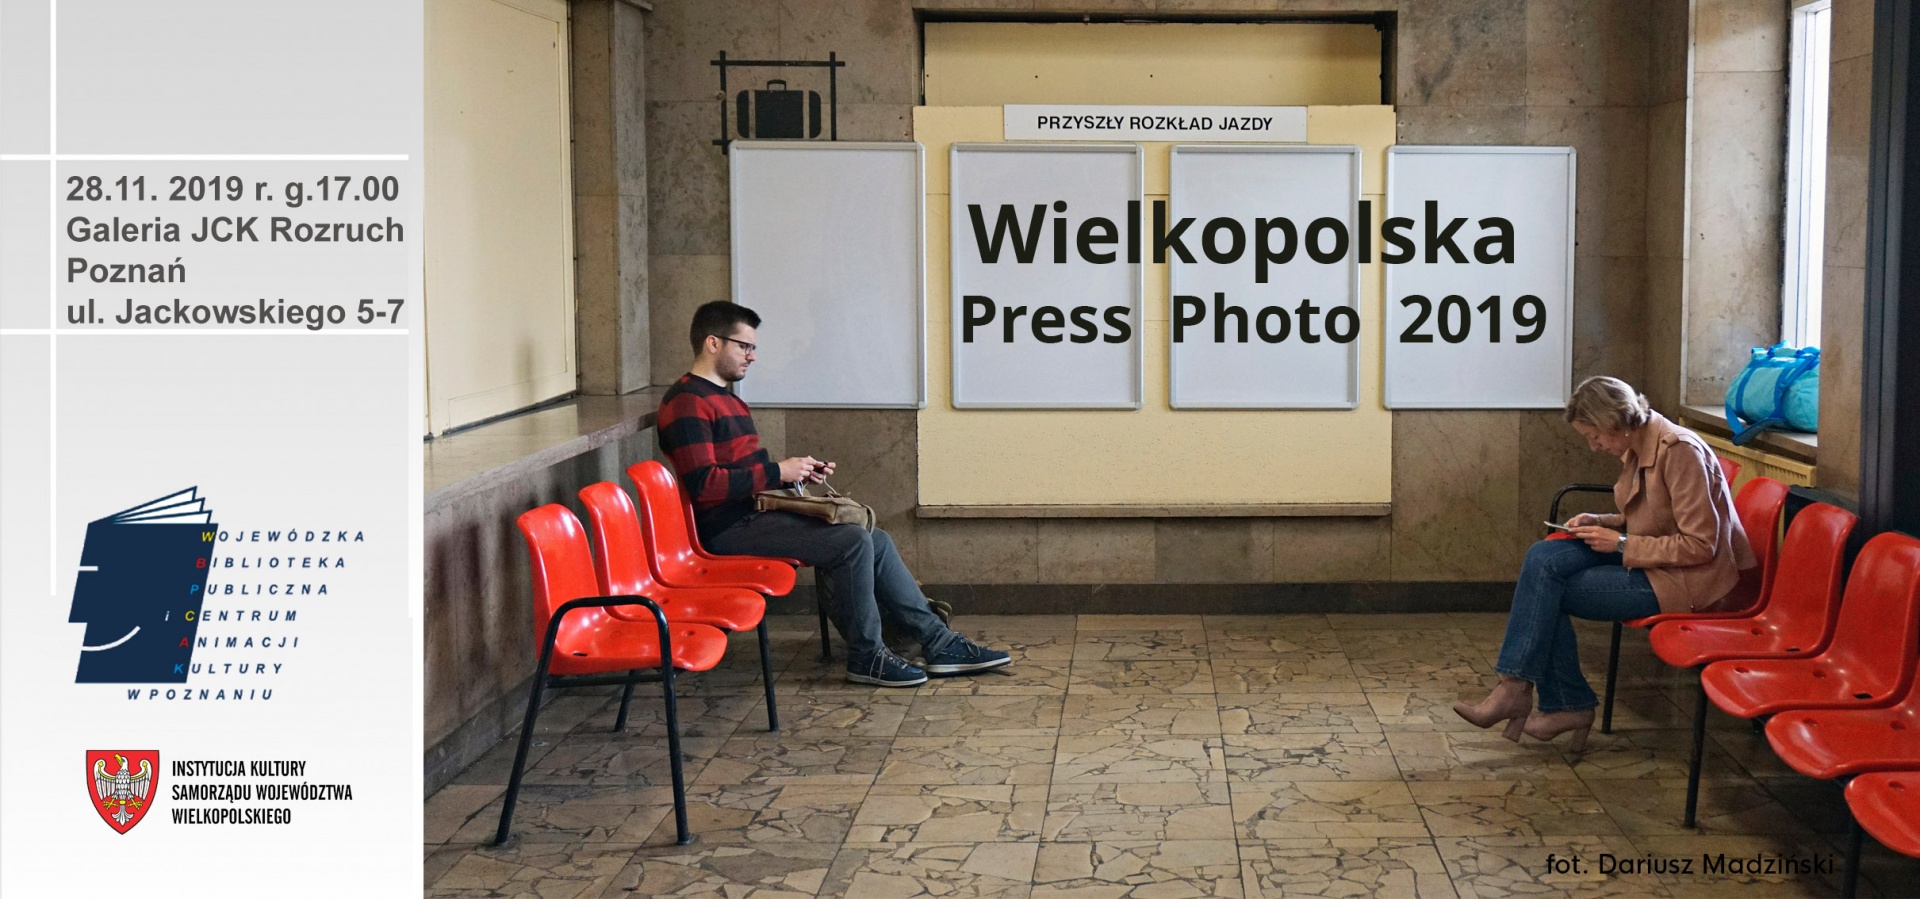 Wielkopolska Press Photo 2019